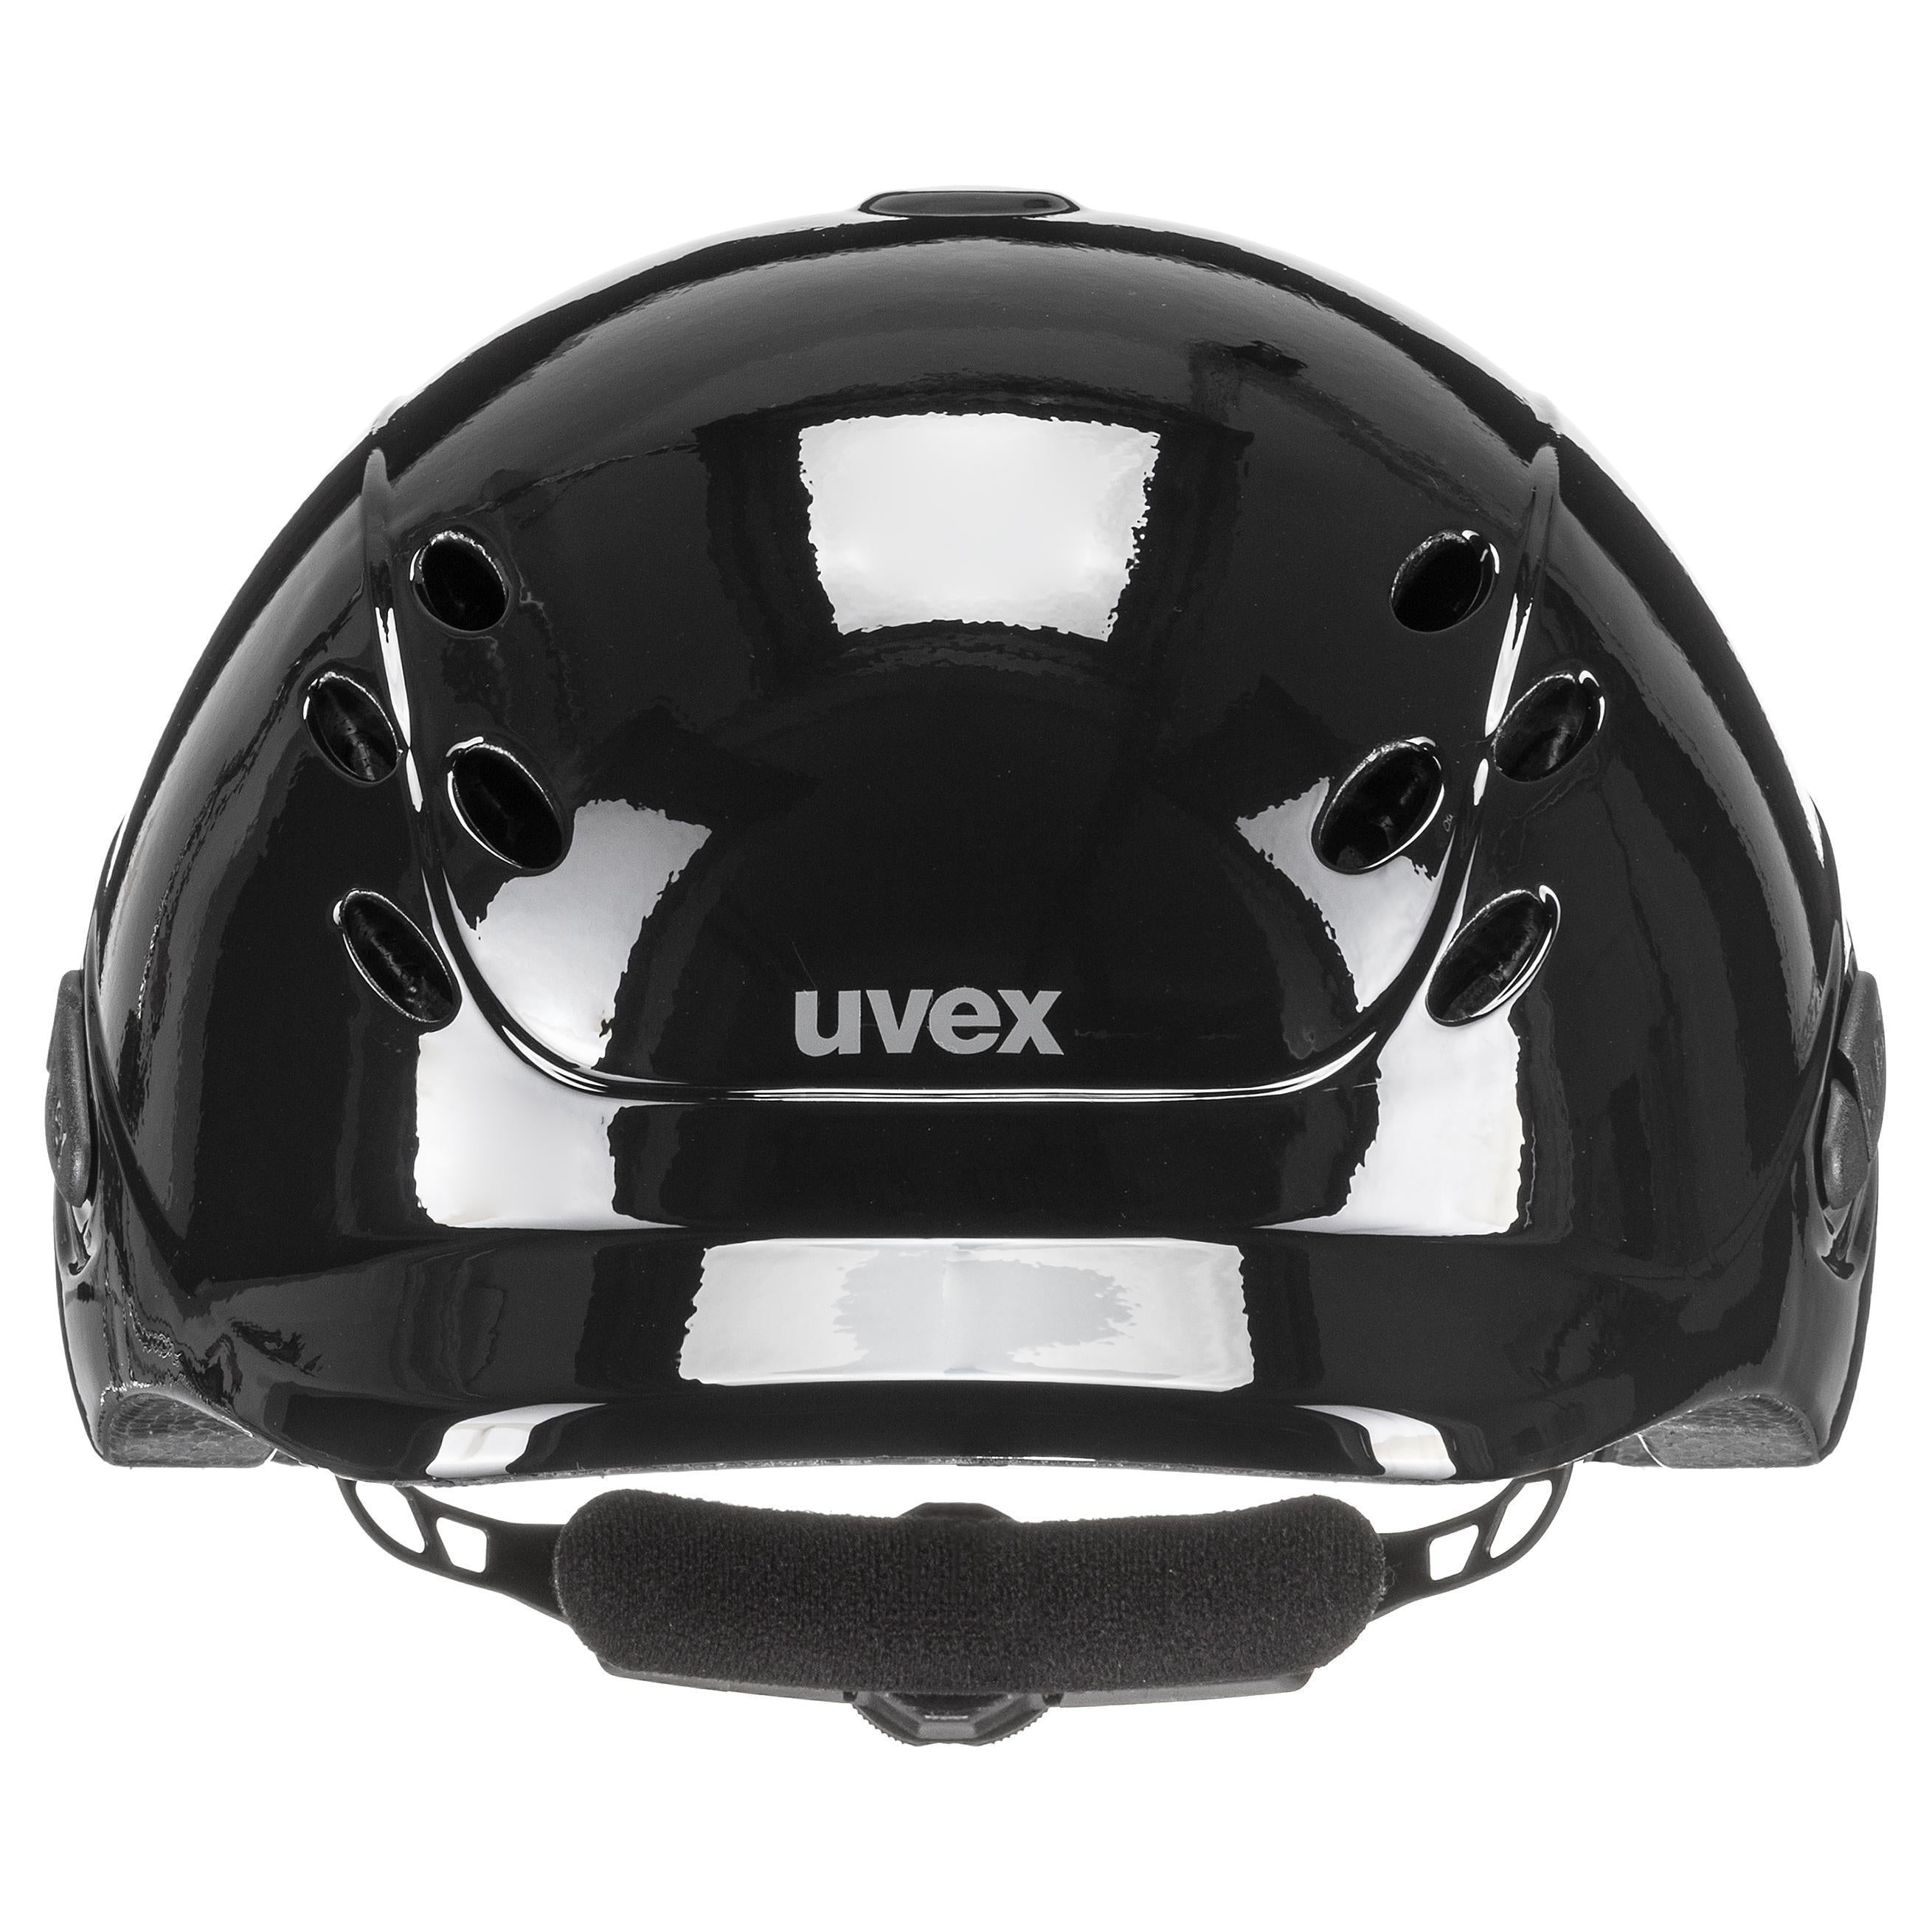 Uvex verstellbarer Kinderreithelm Gr. 49-54 cm onyxx einfarbig schwarz glänzend (NEU)